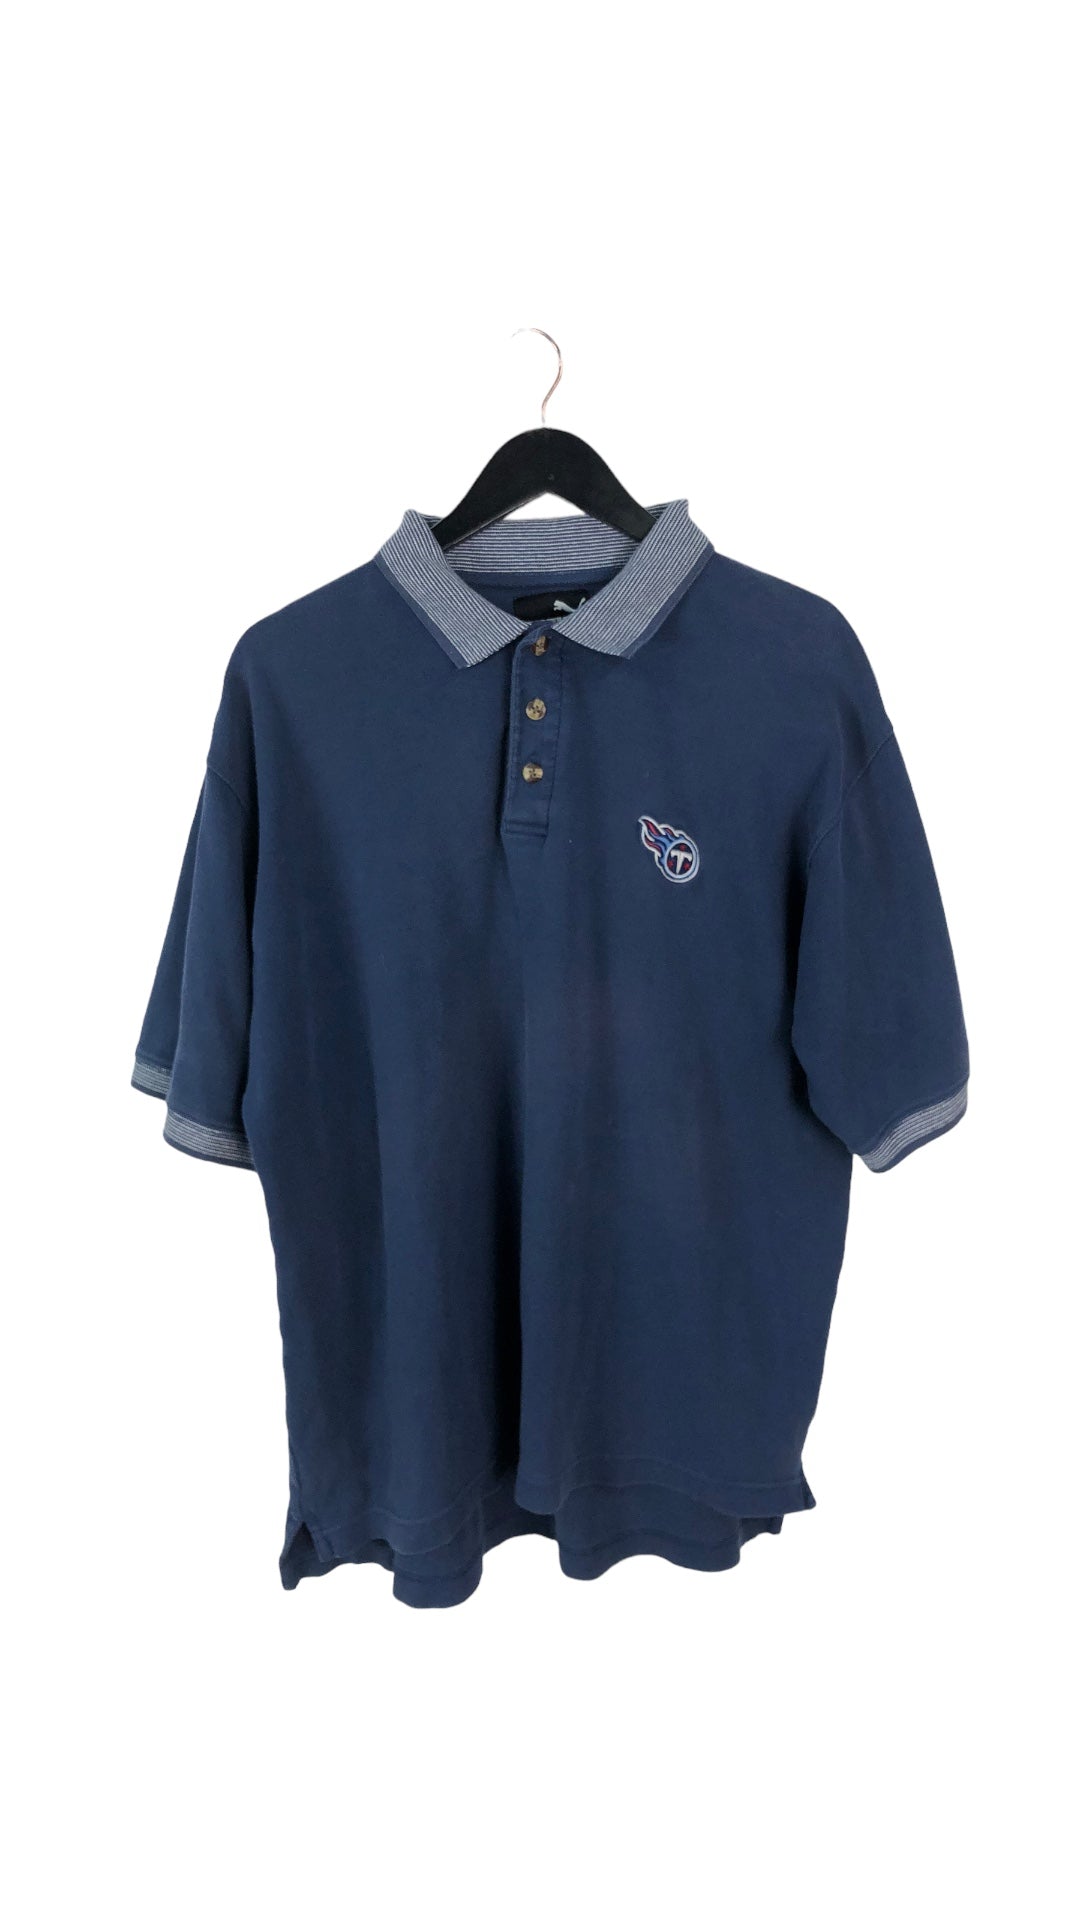 VTG Tennessee Titans Polo Shirt Sz XL